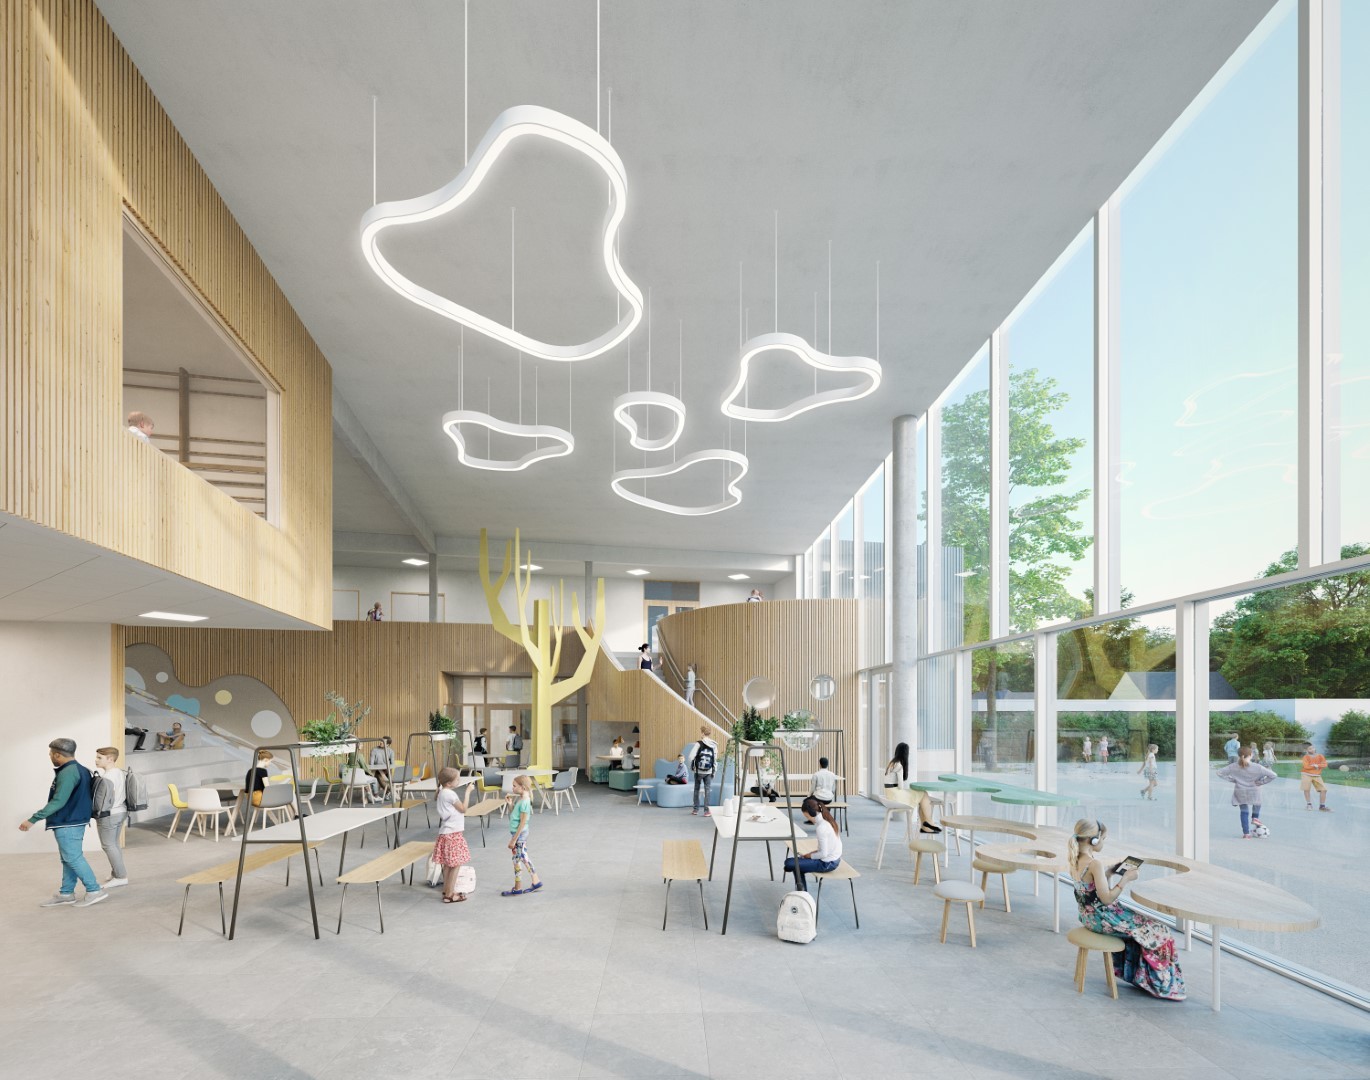 Beeld 1 In Zandbergen wordt een sportzaal op de verdieping van een schoolgebouw geplaatst. (copyright B2Ai architects)